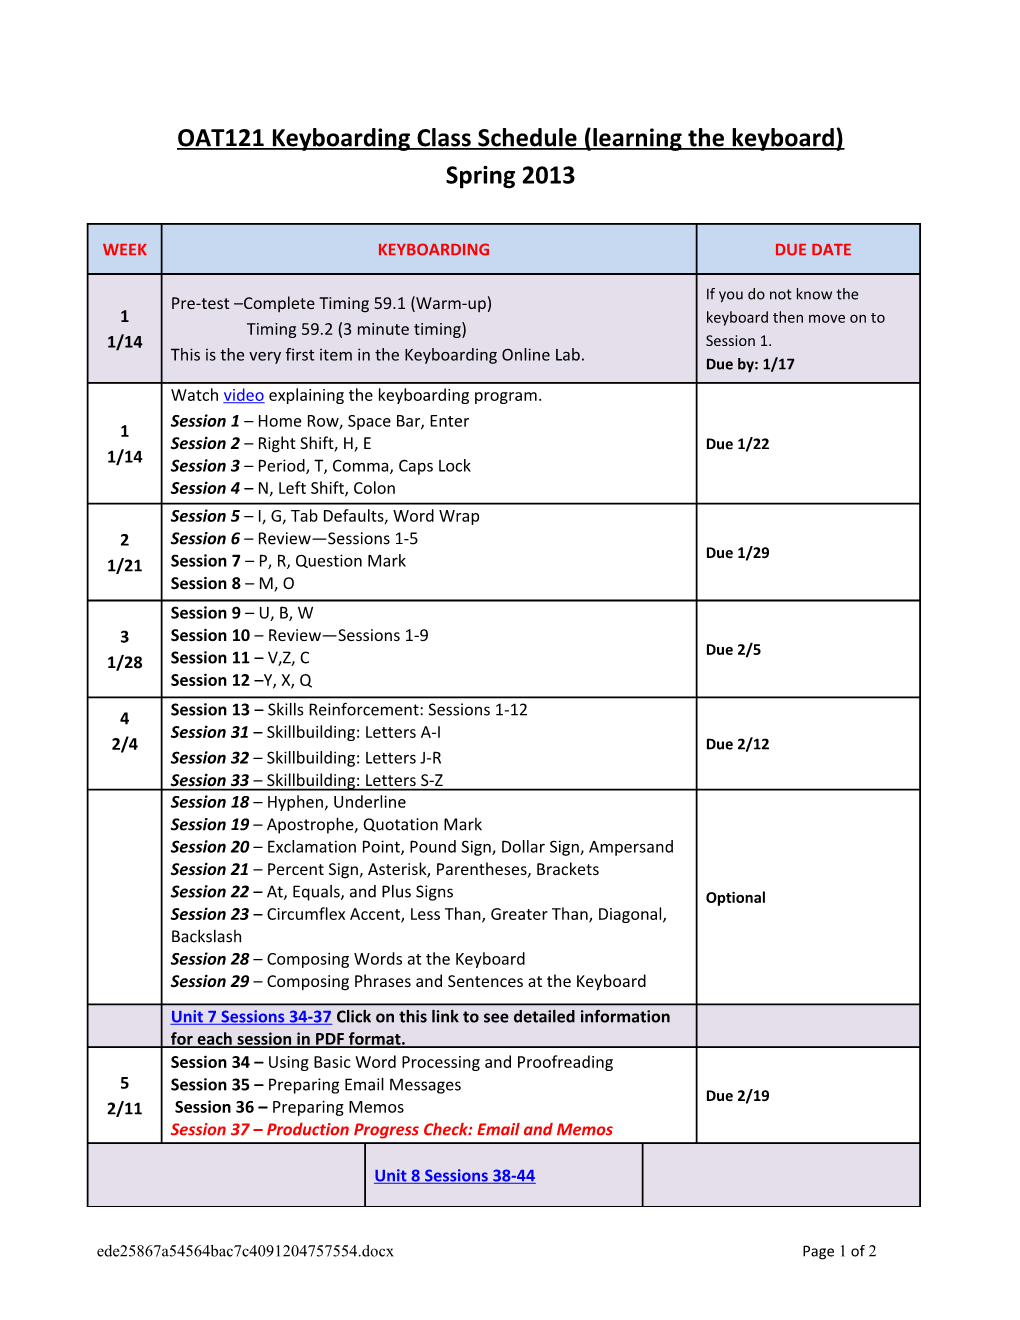 OAT121 Keyboardingclass Schedule (Learning the Keyboard)